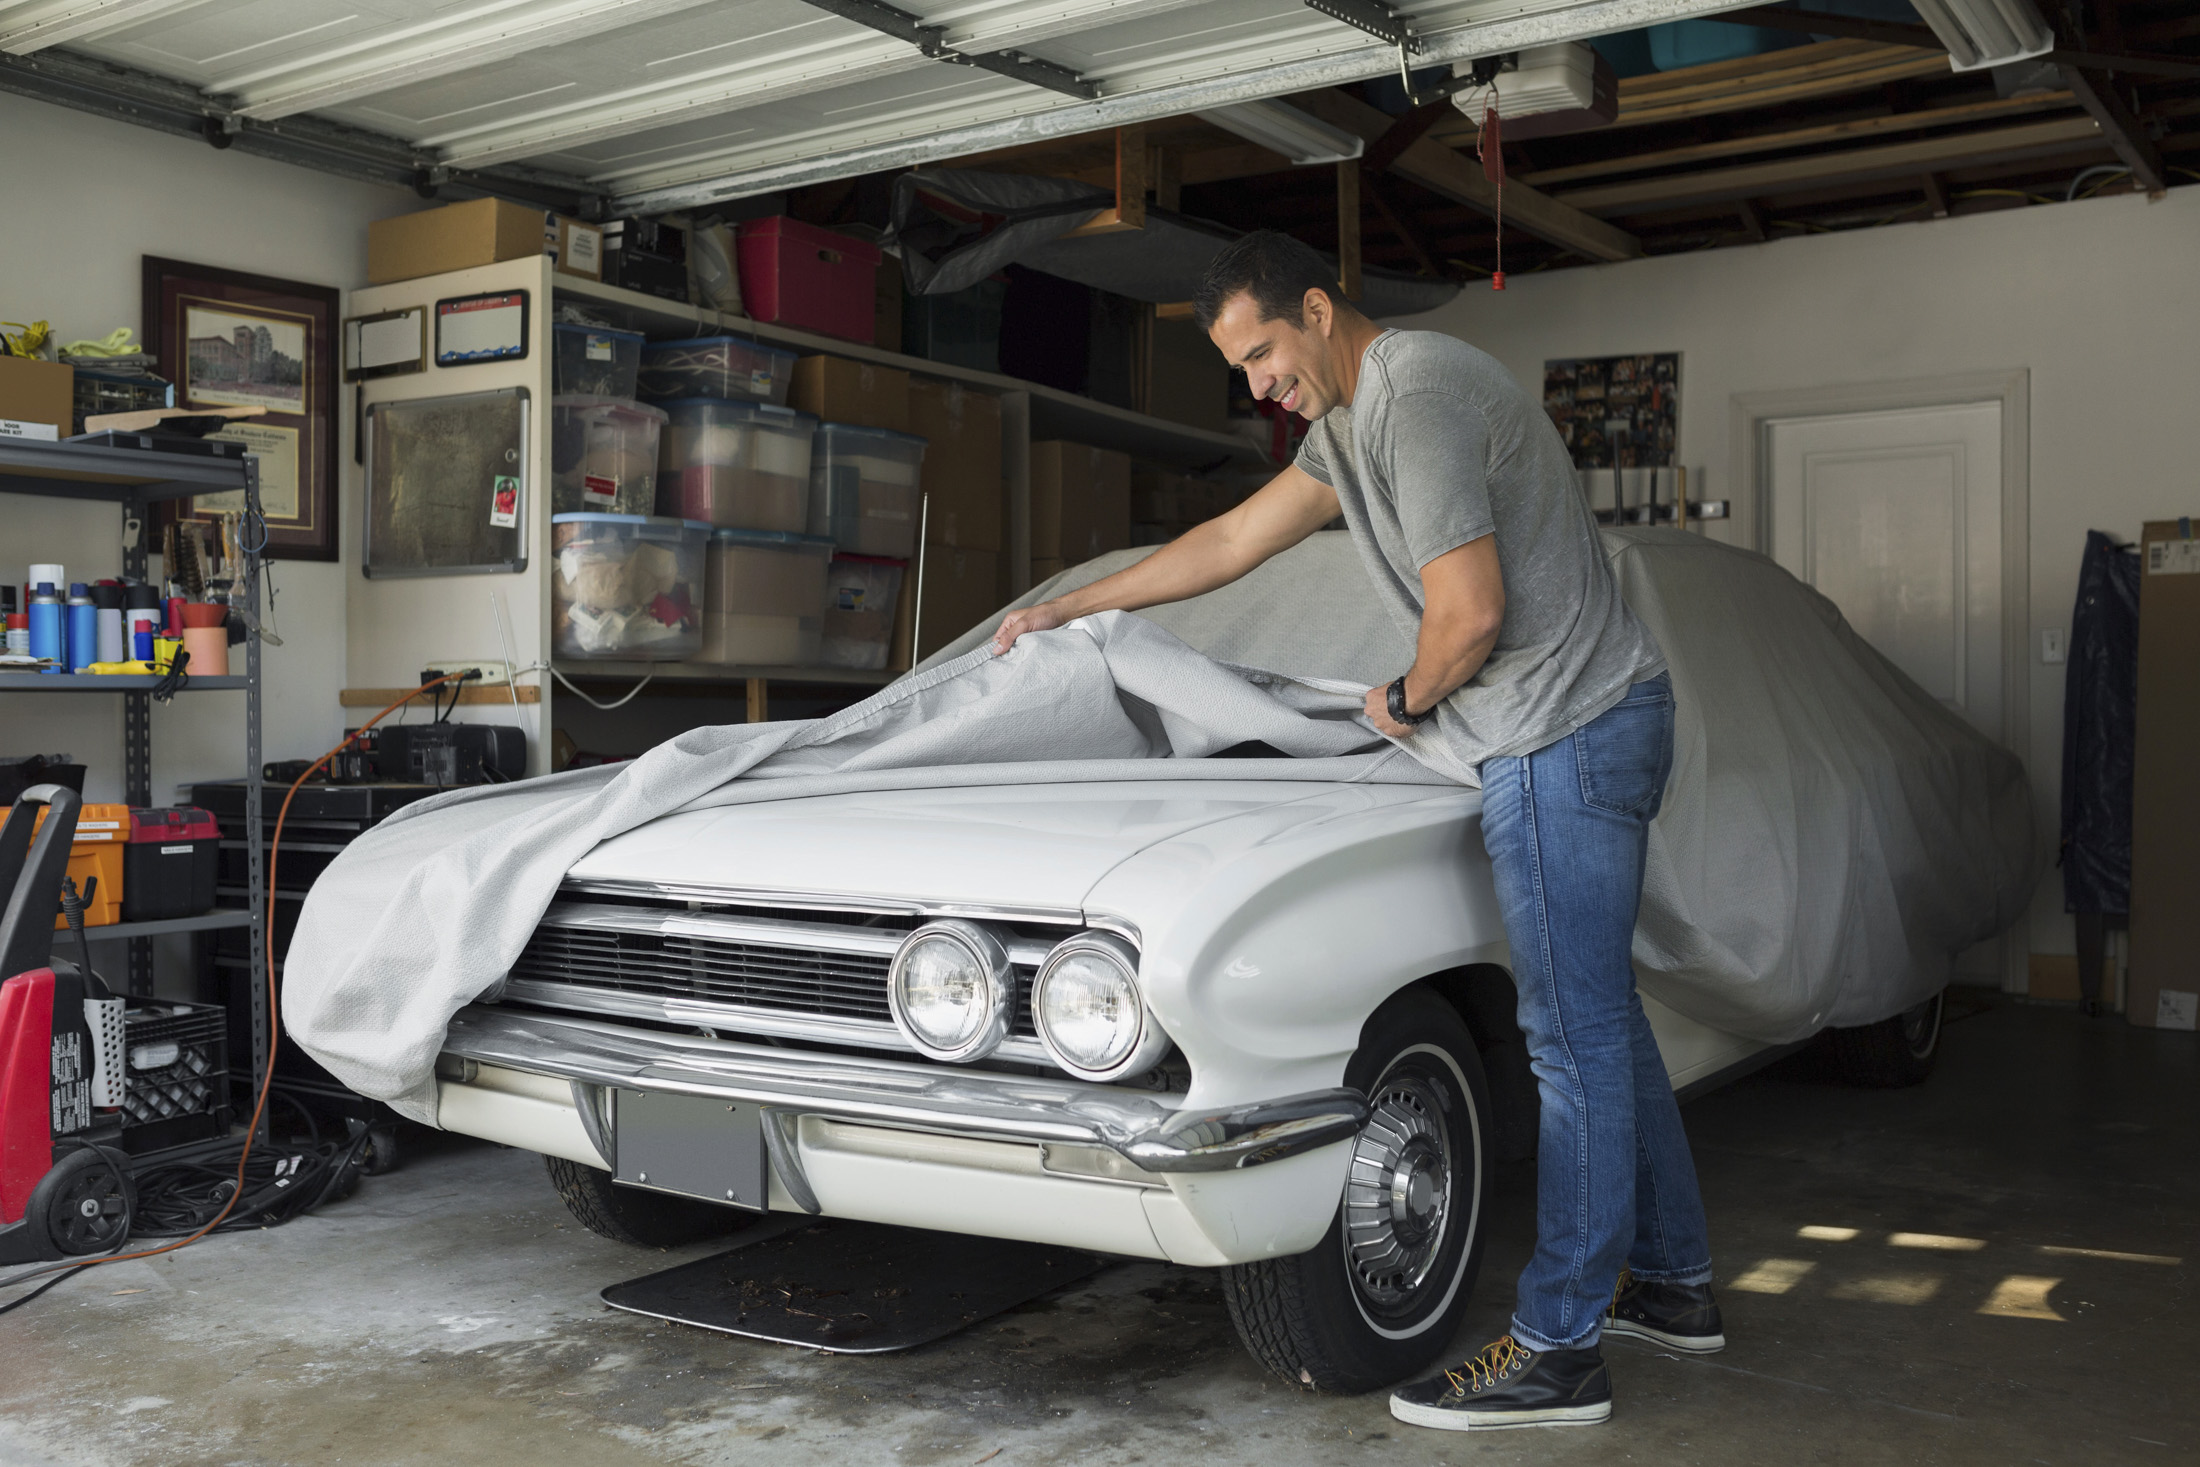 Man uncovering vintage car in garage